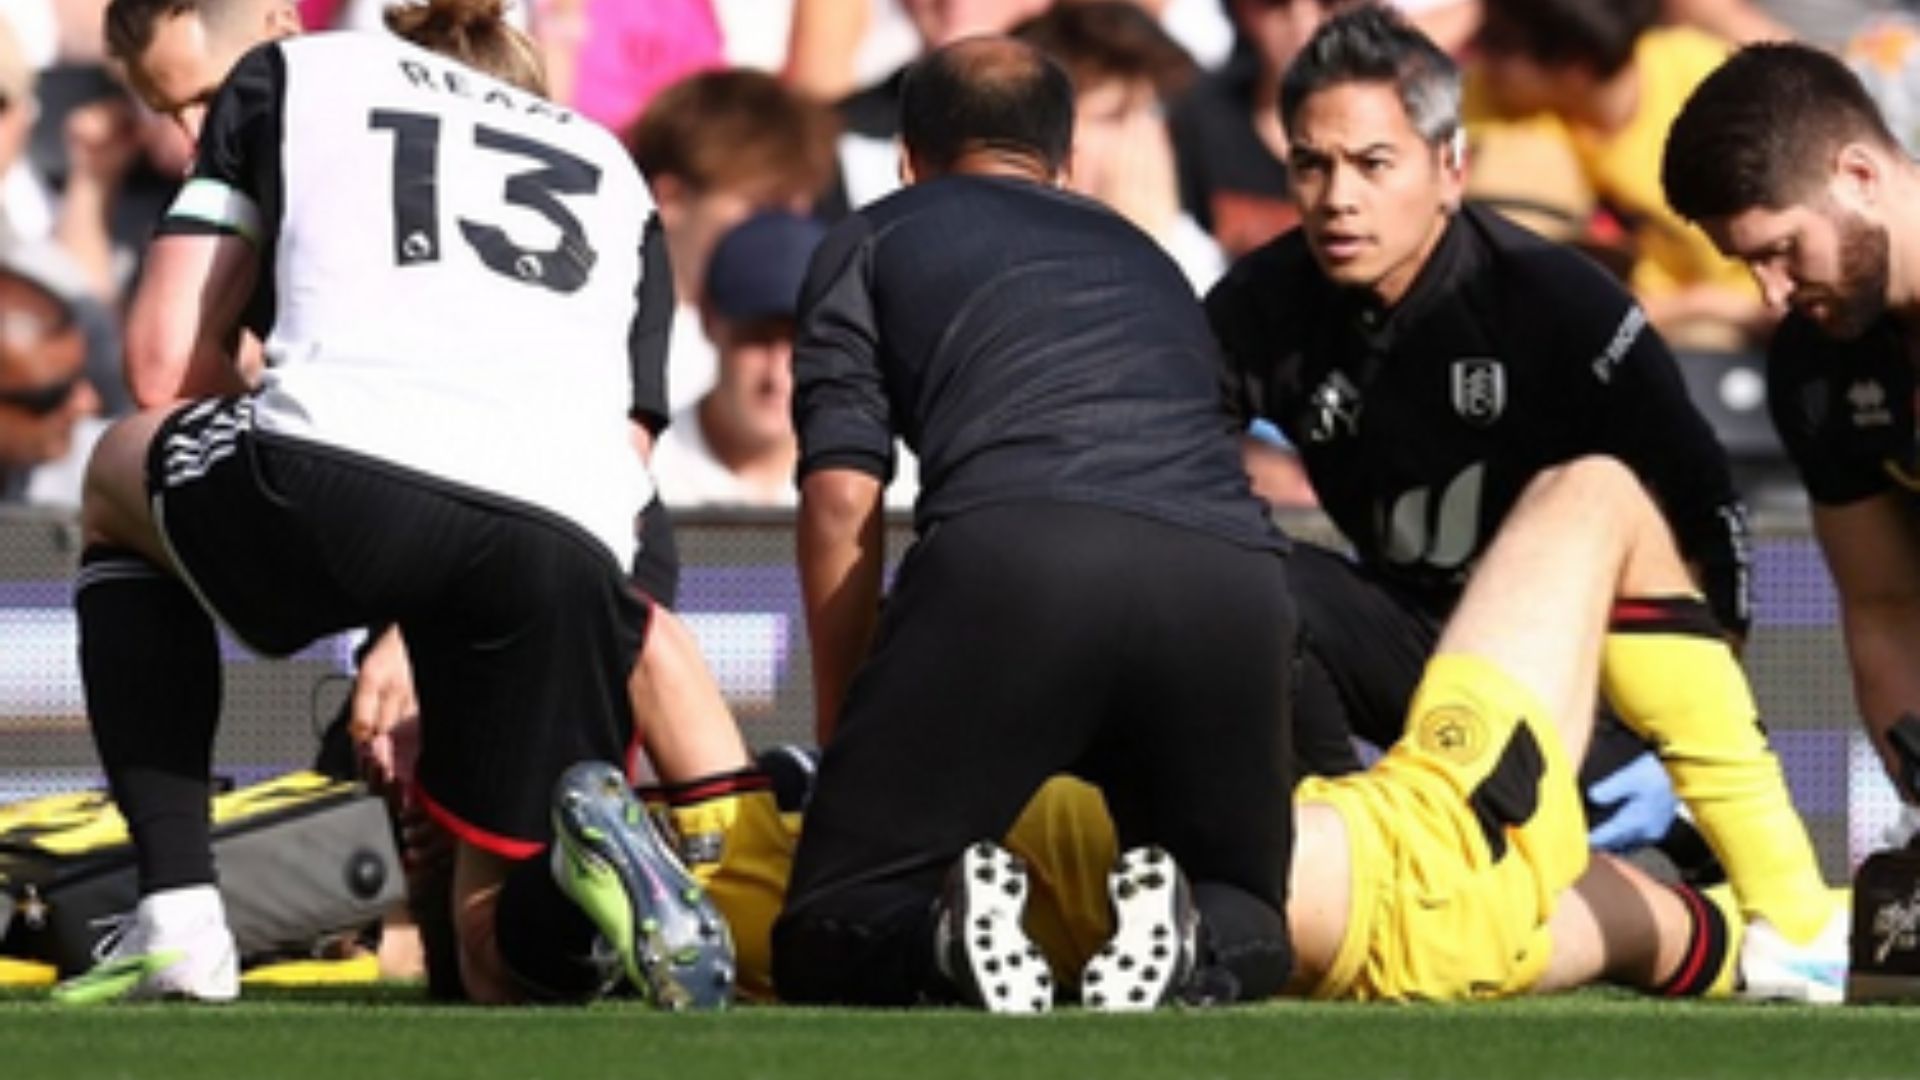 El jugador del Sheffield United, Chris Basham al momento de su escalofriante lesión. (Foto Prensa Libre: Twitter)